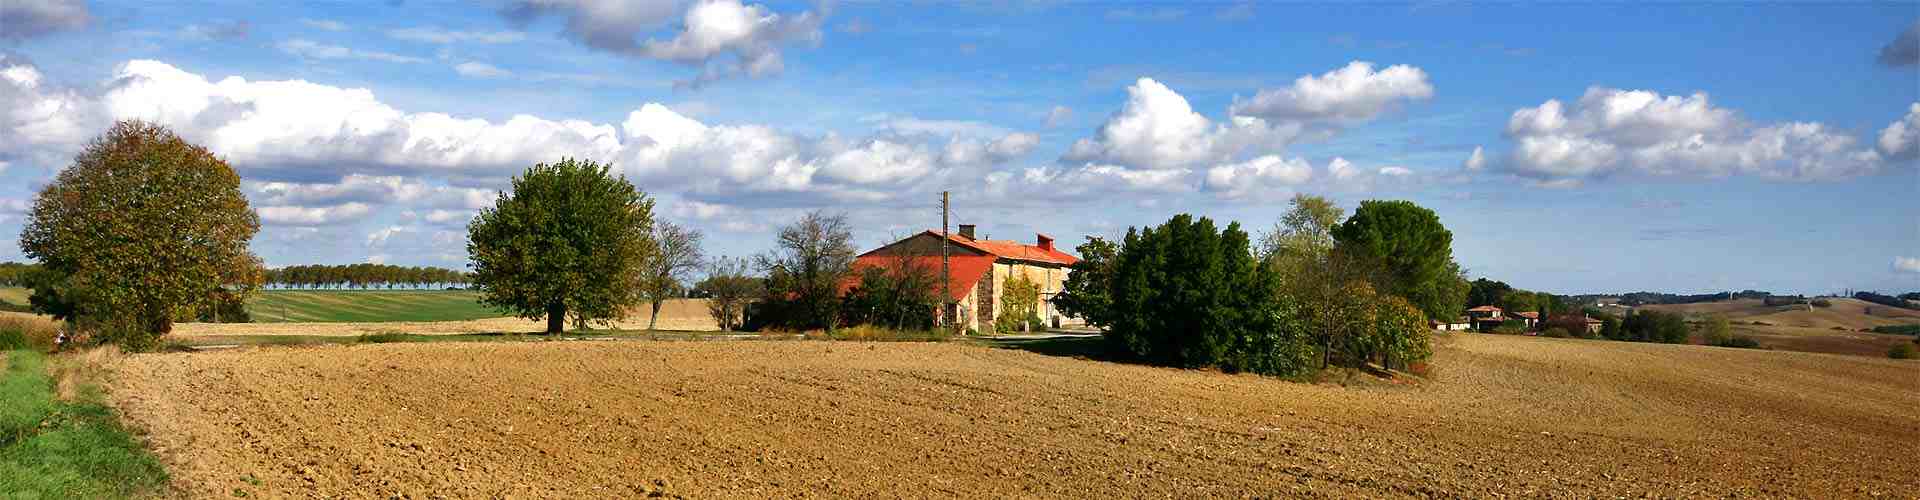 Casas rurales en Azpeitia
           
           


          
          
          
